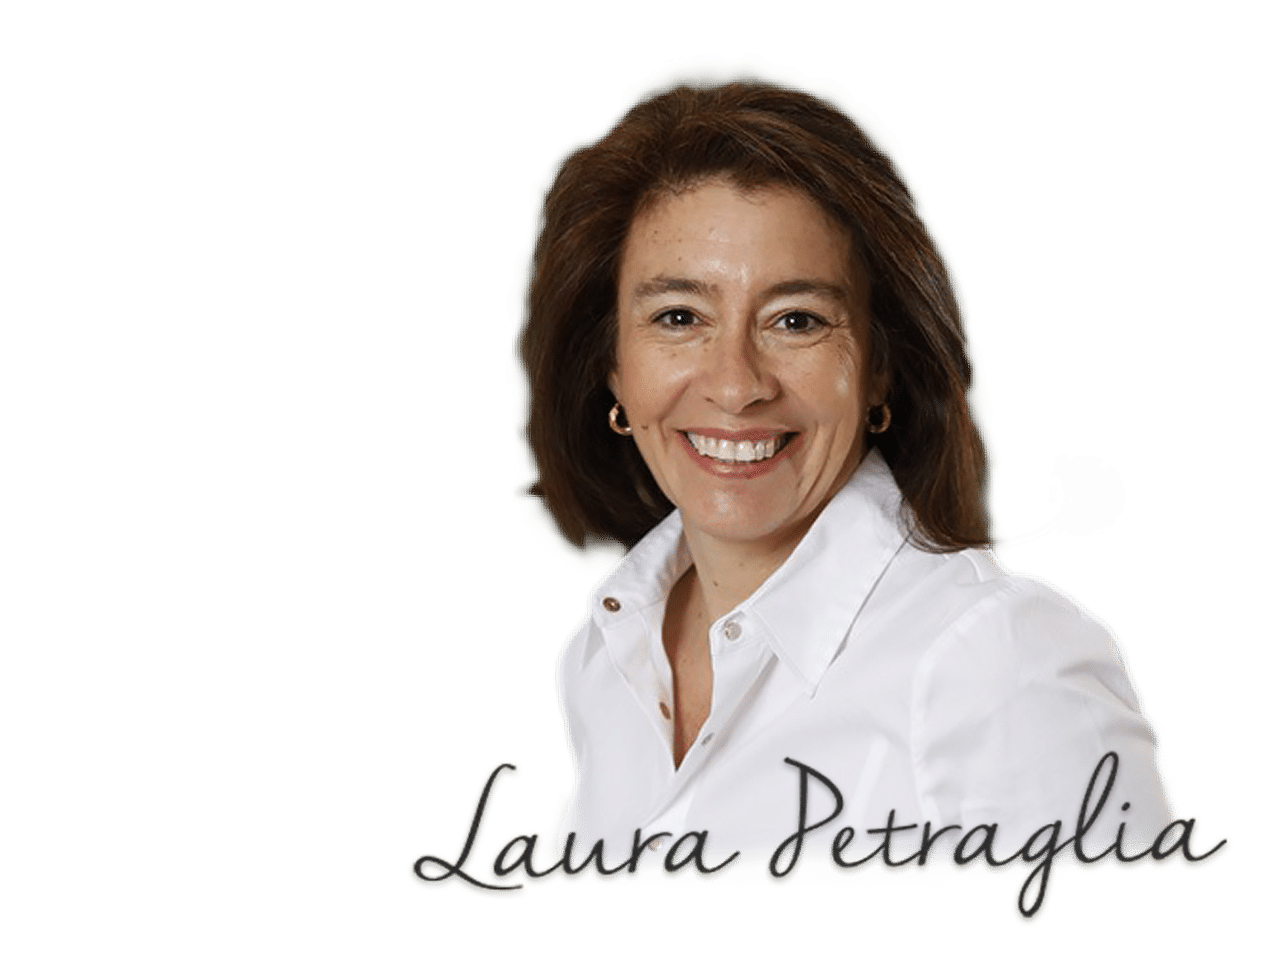 Laura Petraglia